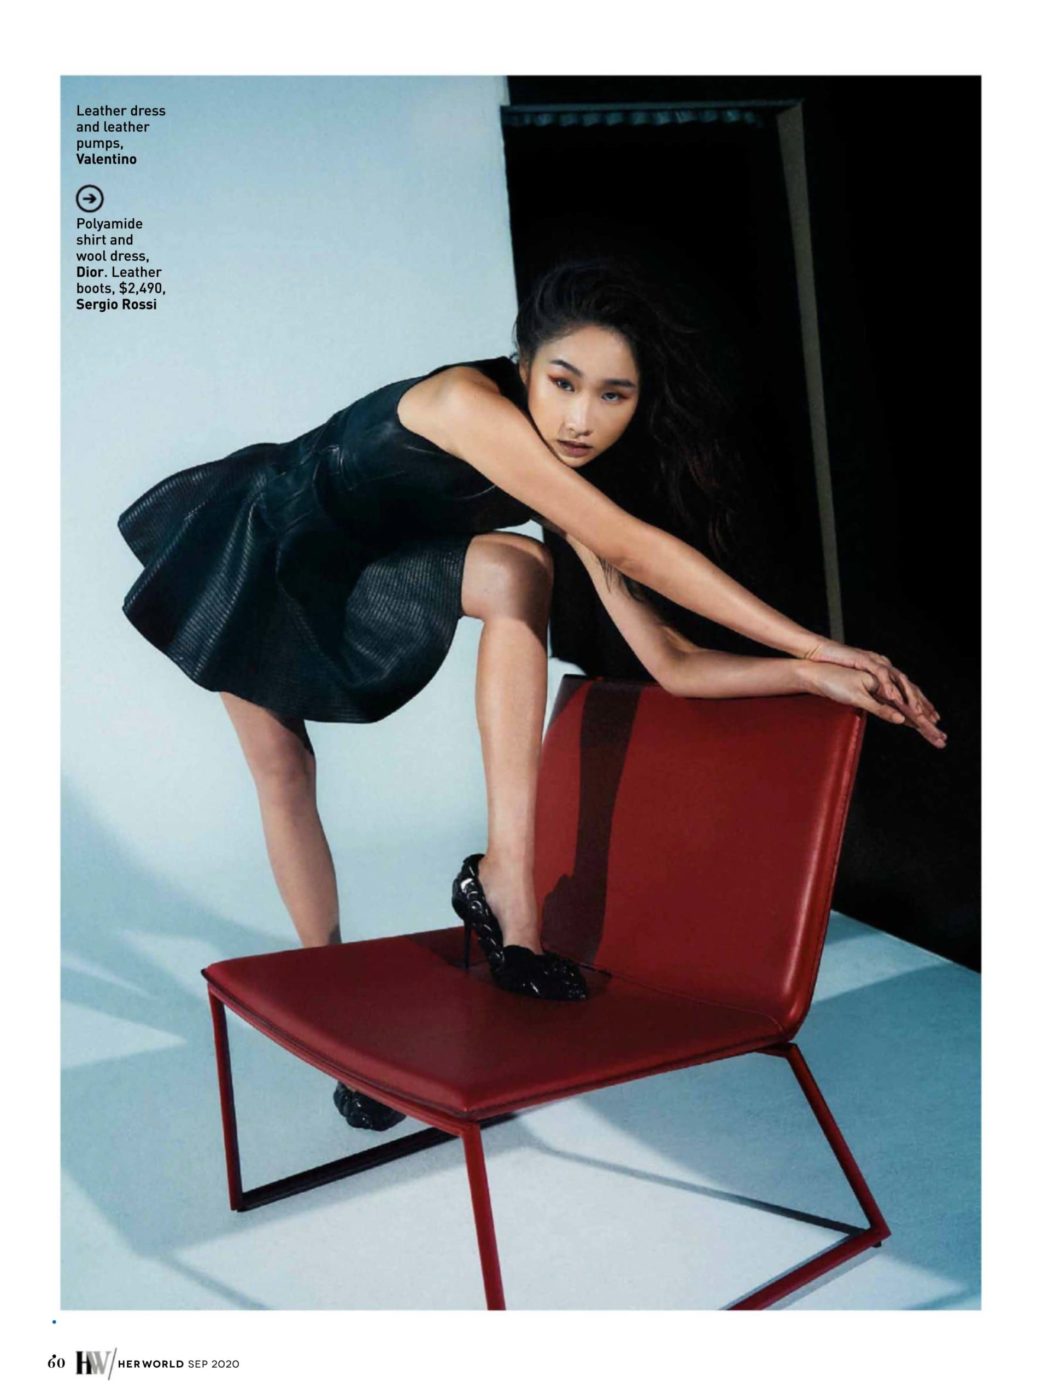 kaci beh singapore female fashion basic models commercial